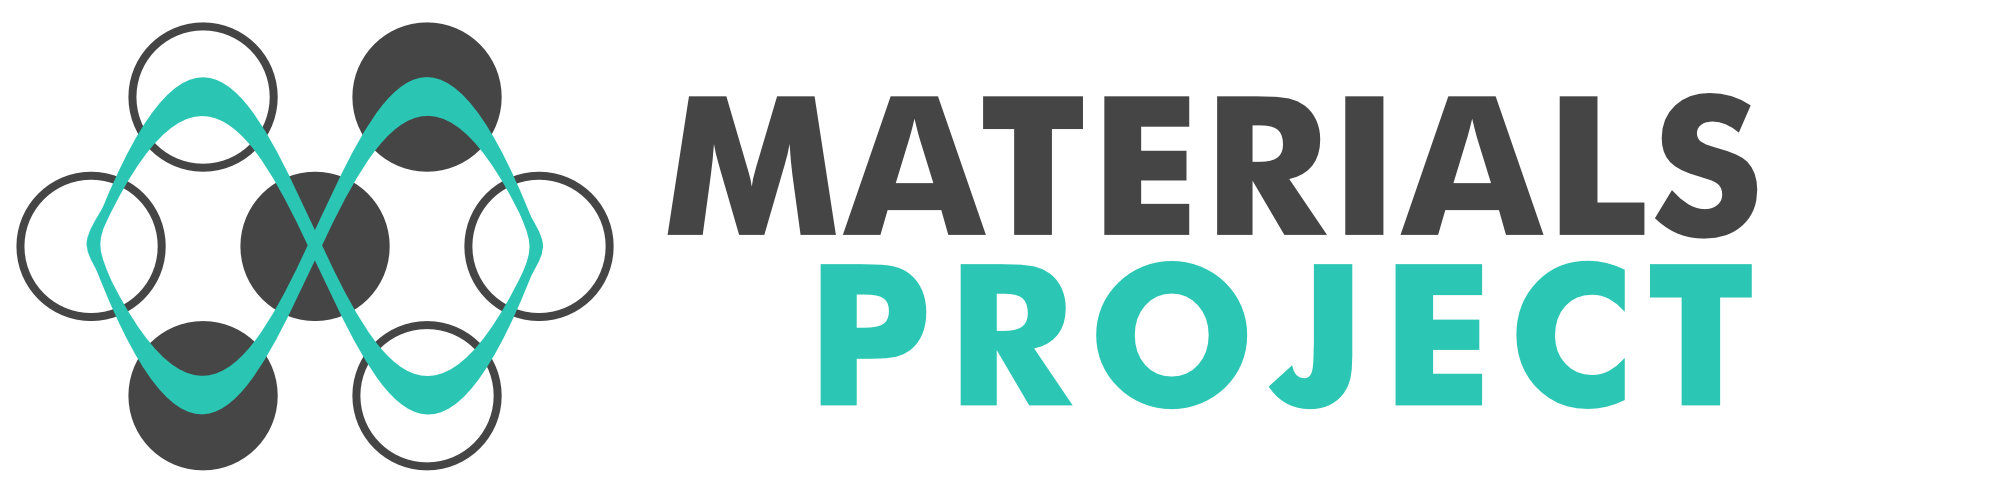 Materials Project Workshop 2019